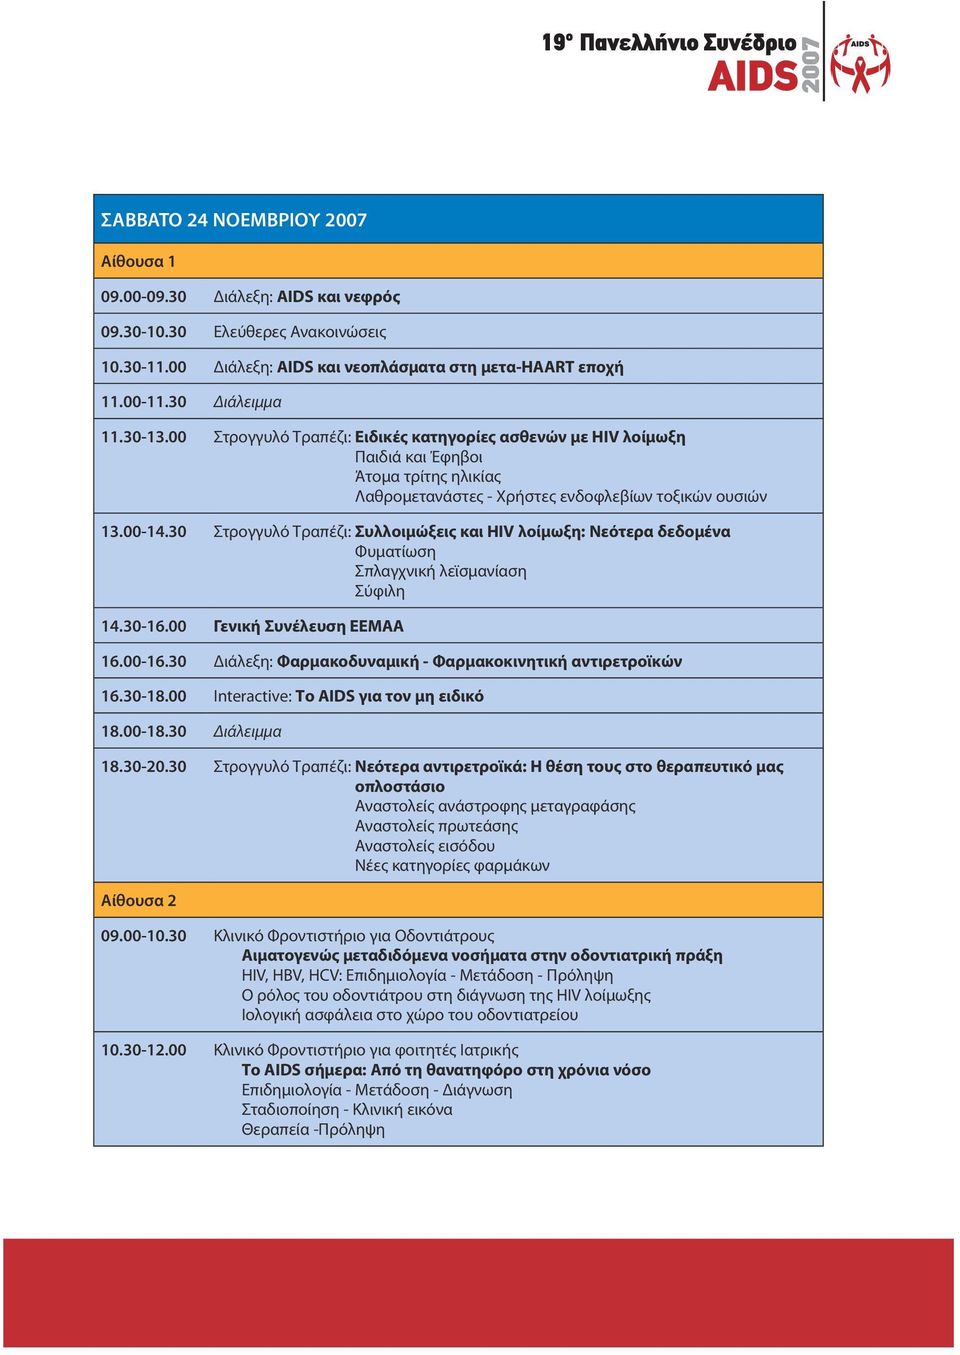 30 Στρογγυλό Τραπέζι: Συλλοιμώξεις και HIV λοίμωξη: Νεότερα δεδομένα Φυματίωση Σπλαγχνική λεϊσμανίαση Σύφιλη 14.30-16.00 Γενική Συνέλευση ΕΕΜΑΑ 16.00-16.